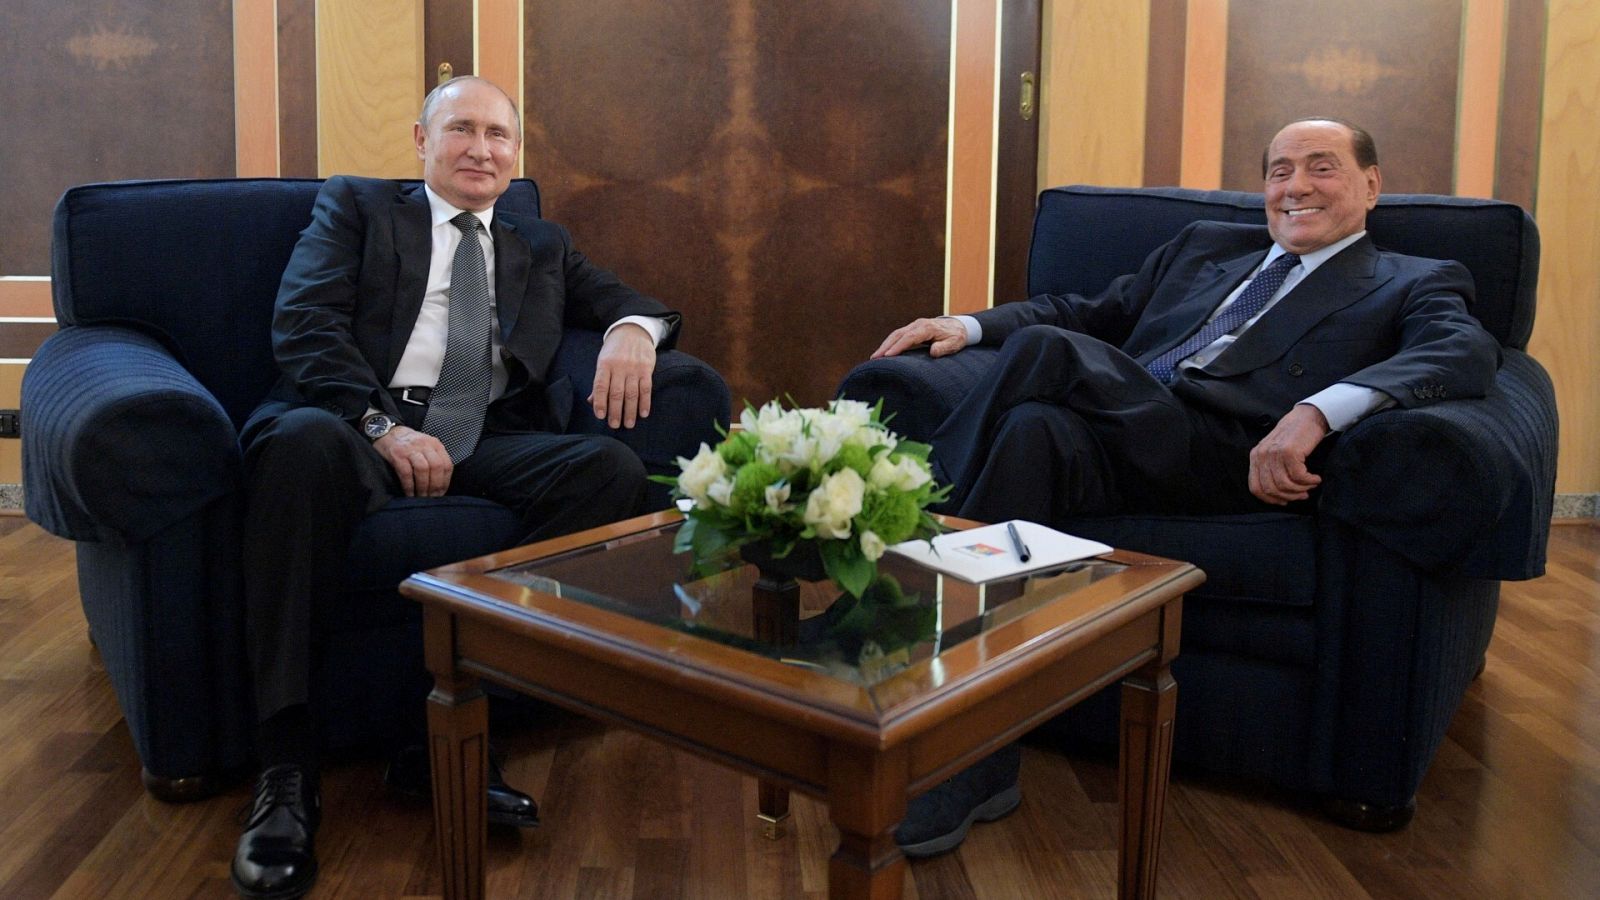 Reunión entre Berlusconi y Putin en 2019, fotografía de archivo